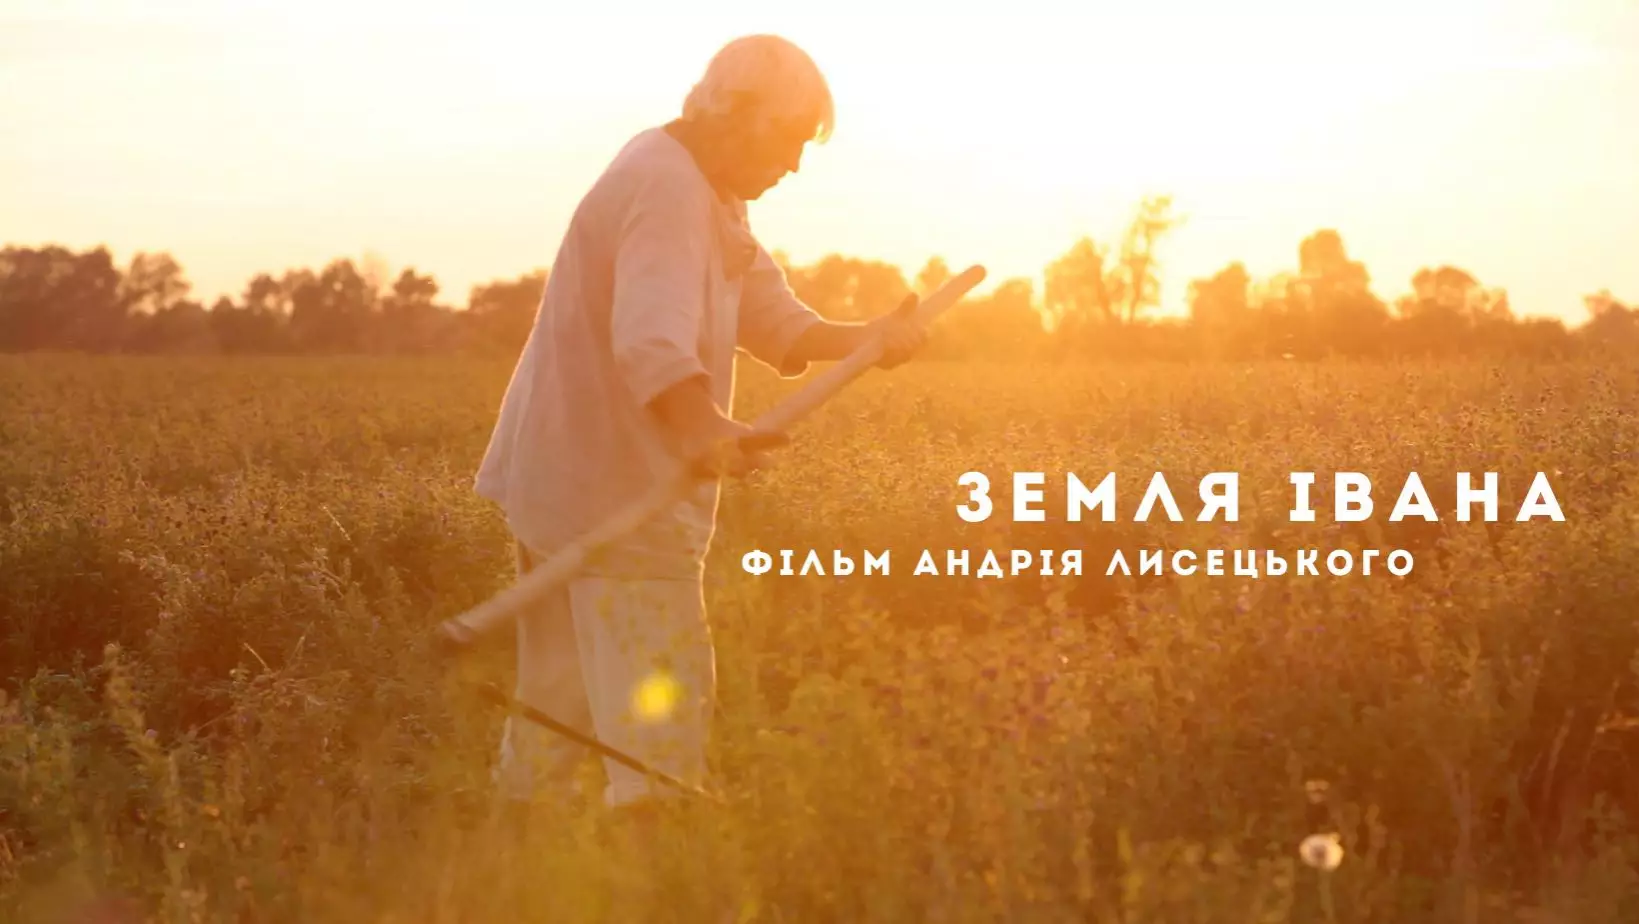 Українську стрічку «Земля Івана» покажуть на фестивалі в Польщі